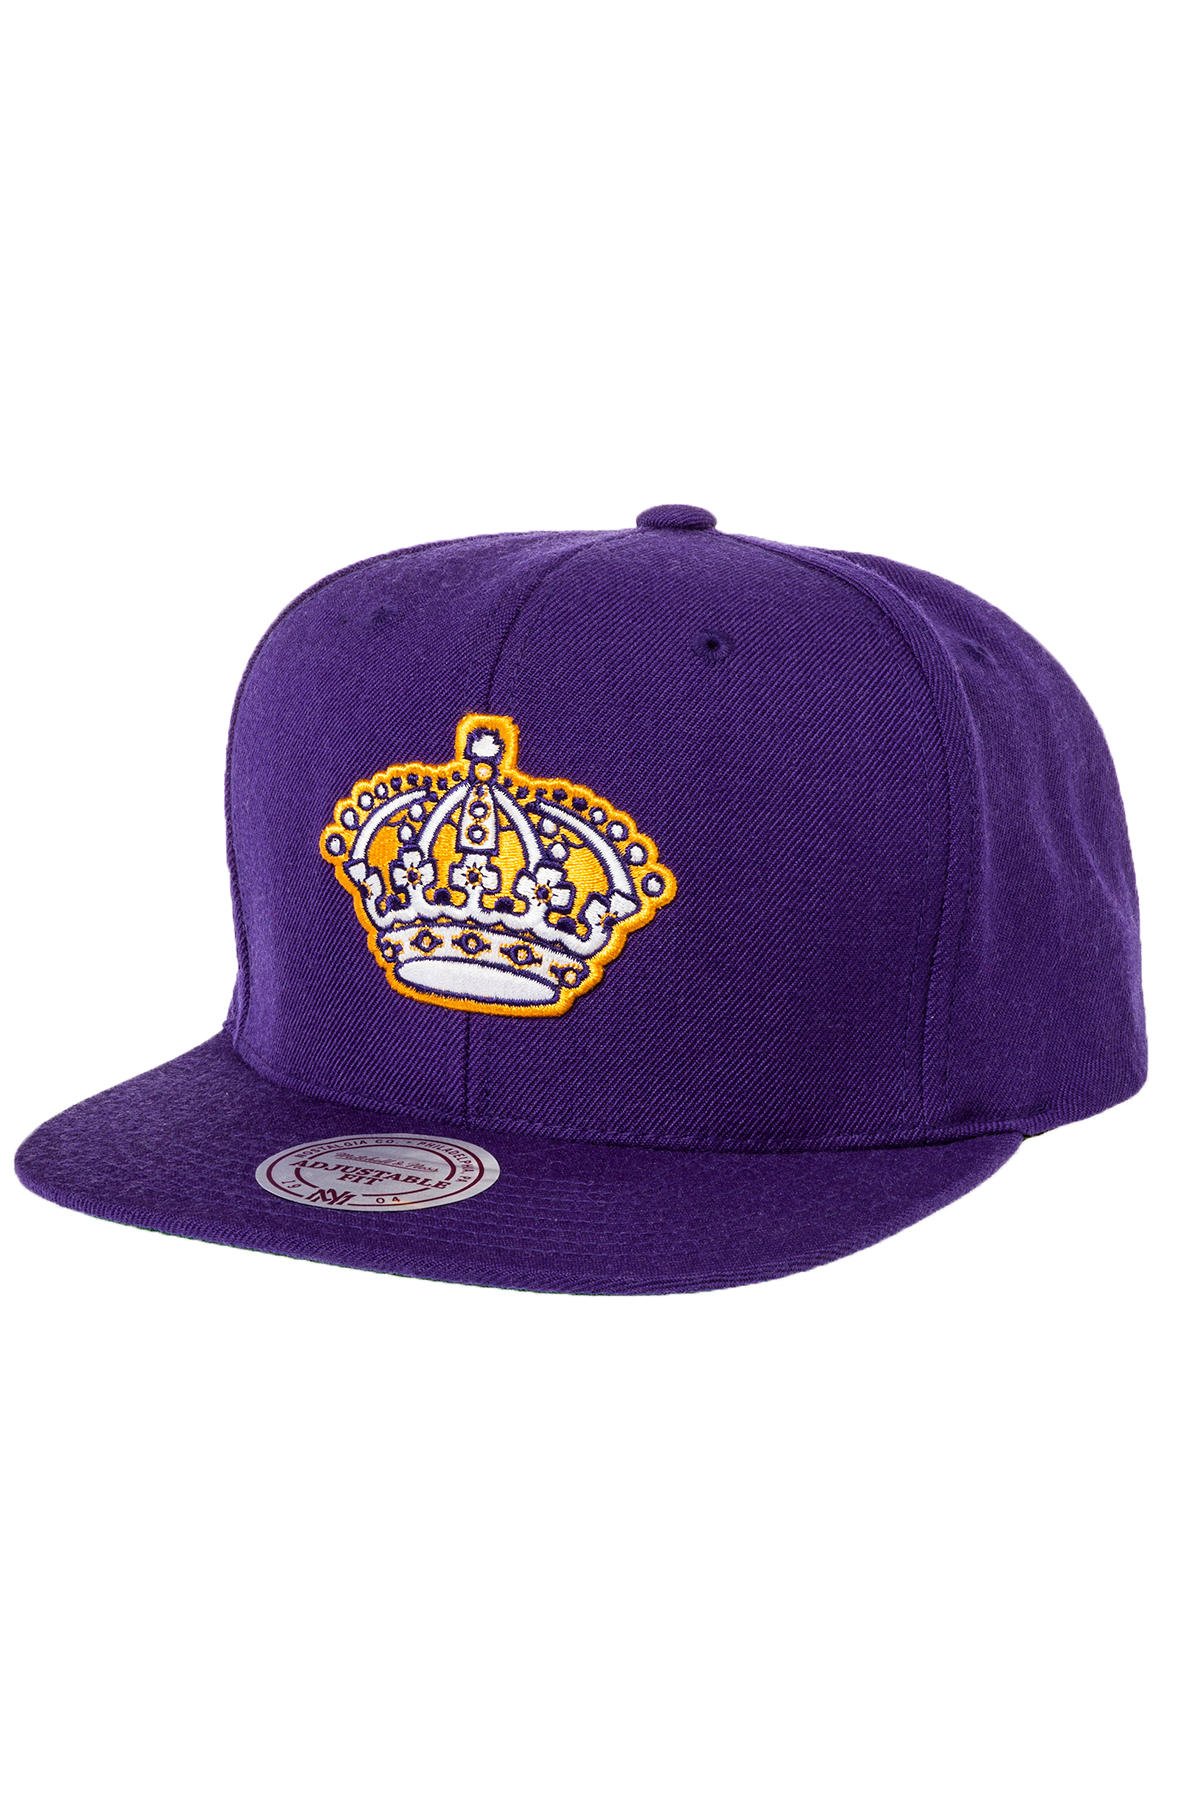 la kings purple hat